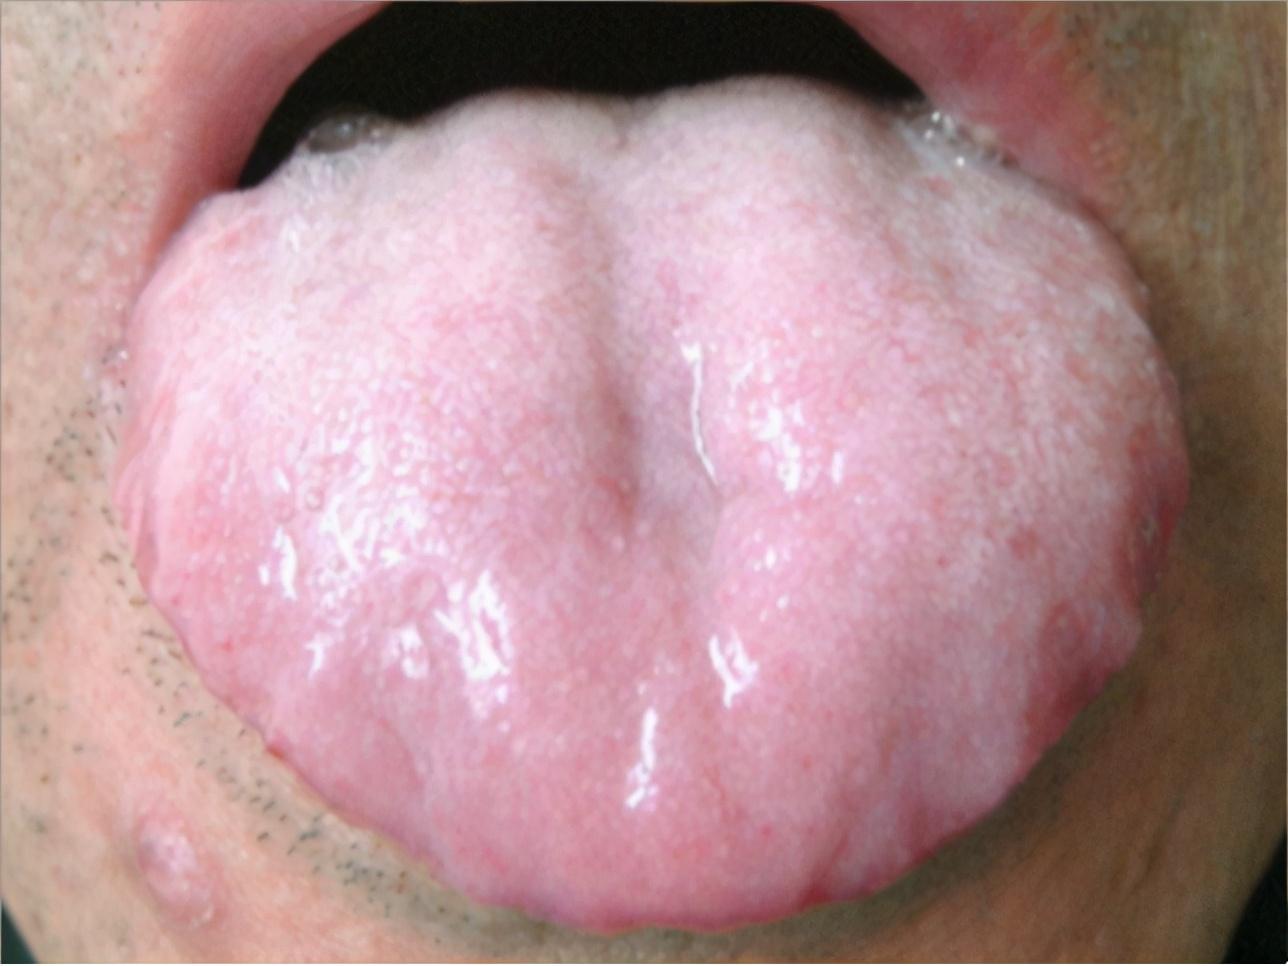 如邪热炽盛,大汗,吐泻后,或过服温燥药物等,导致津液不足,舌苔失于濡